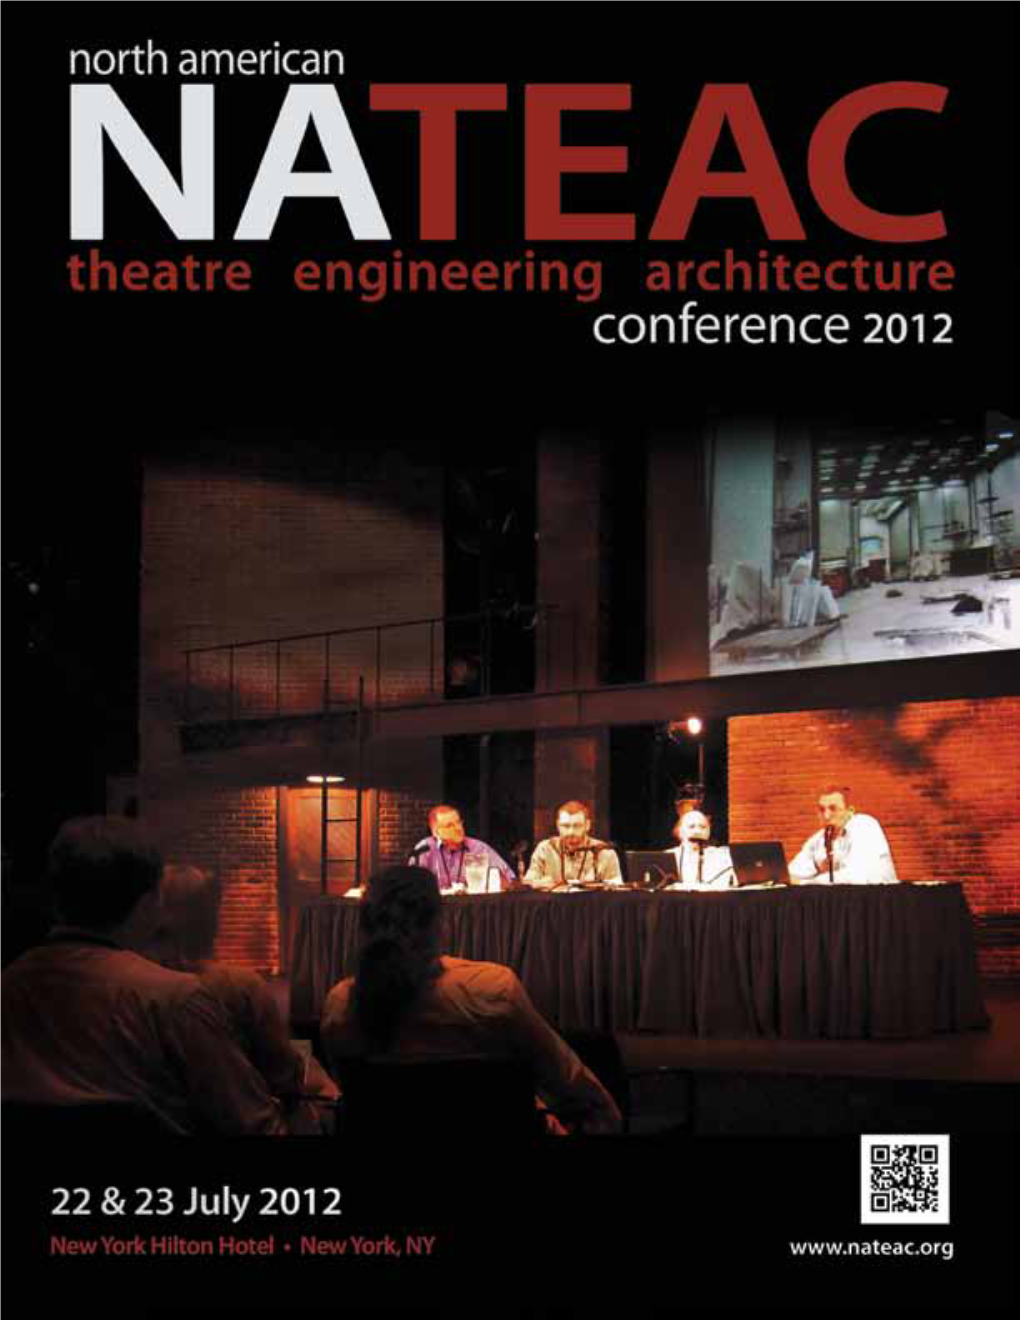 The NATEAC Board